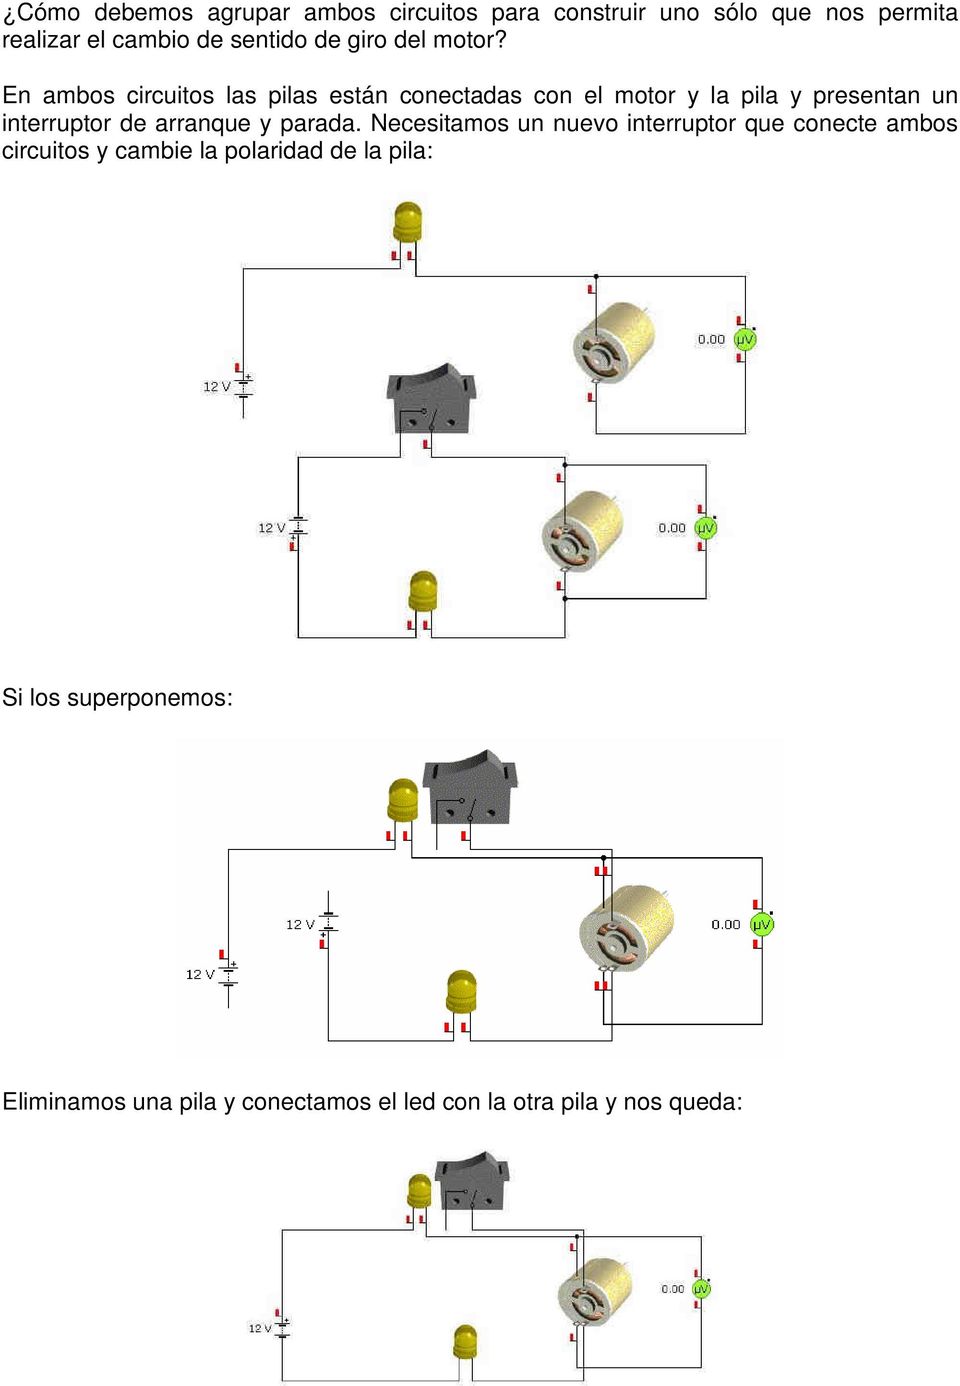 En ambos circuitos las pilas están conectadas con el motor y la pila y presentan un interruptor de arranque